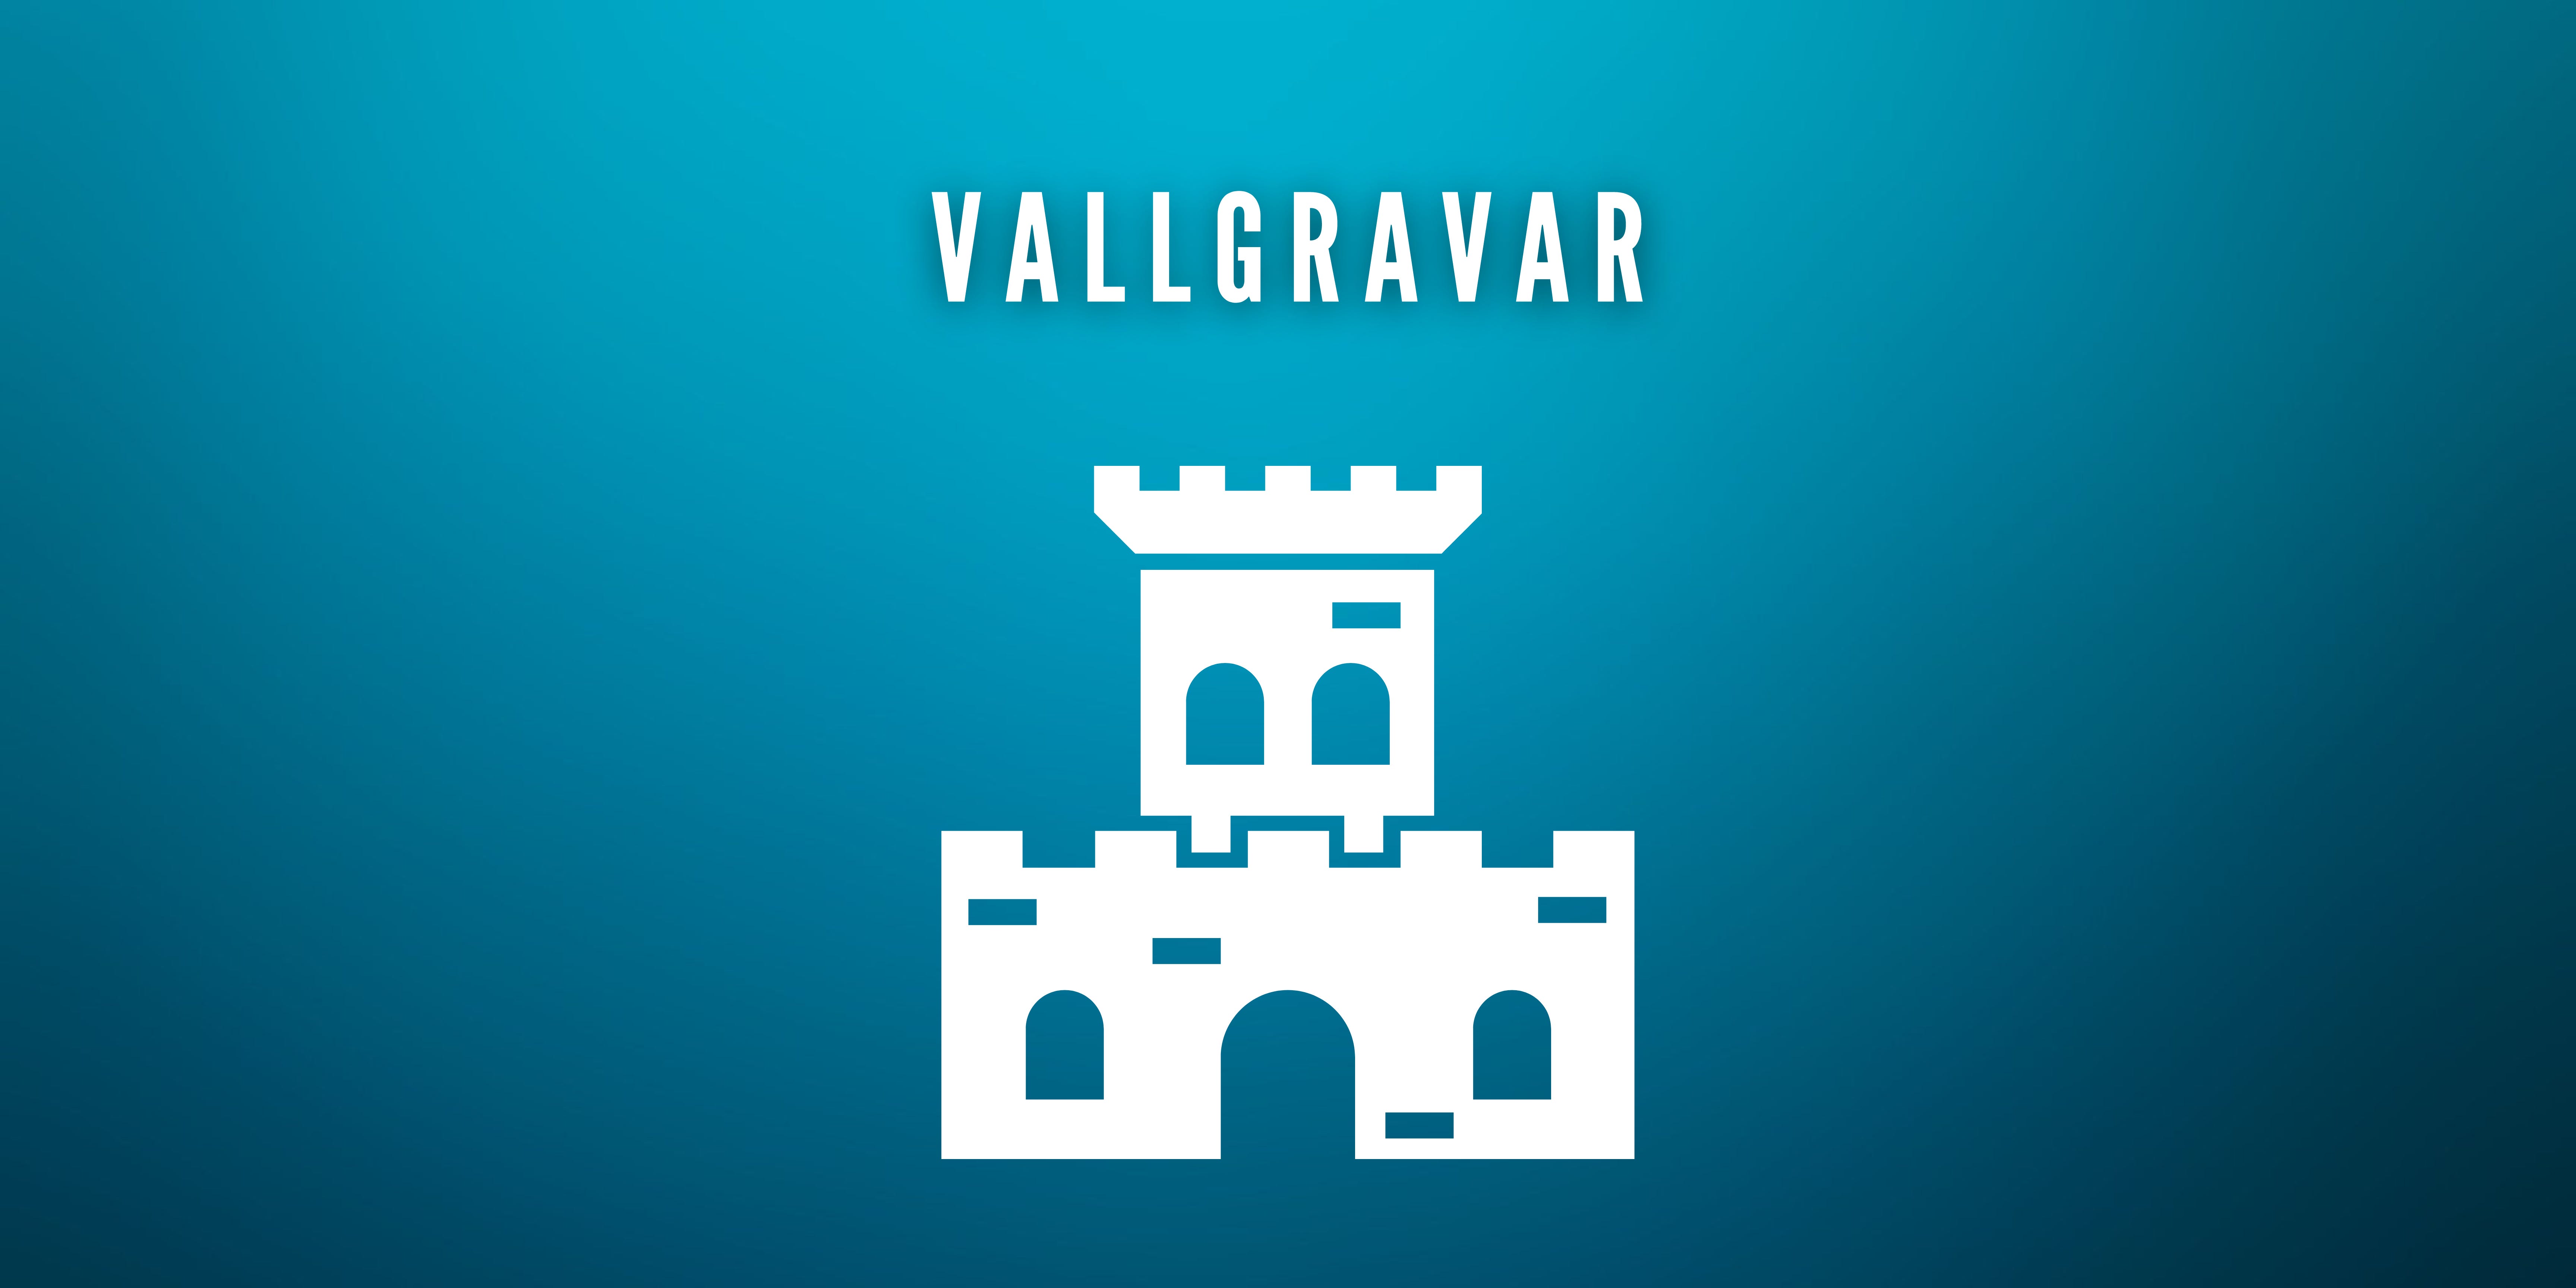 Vallgravar